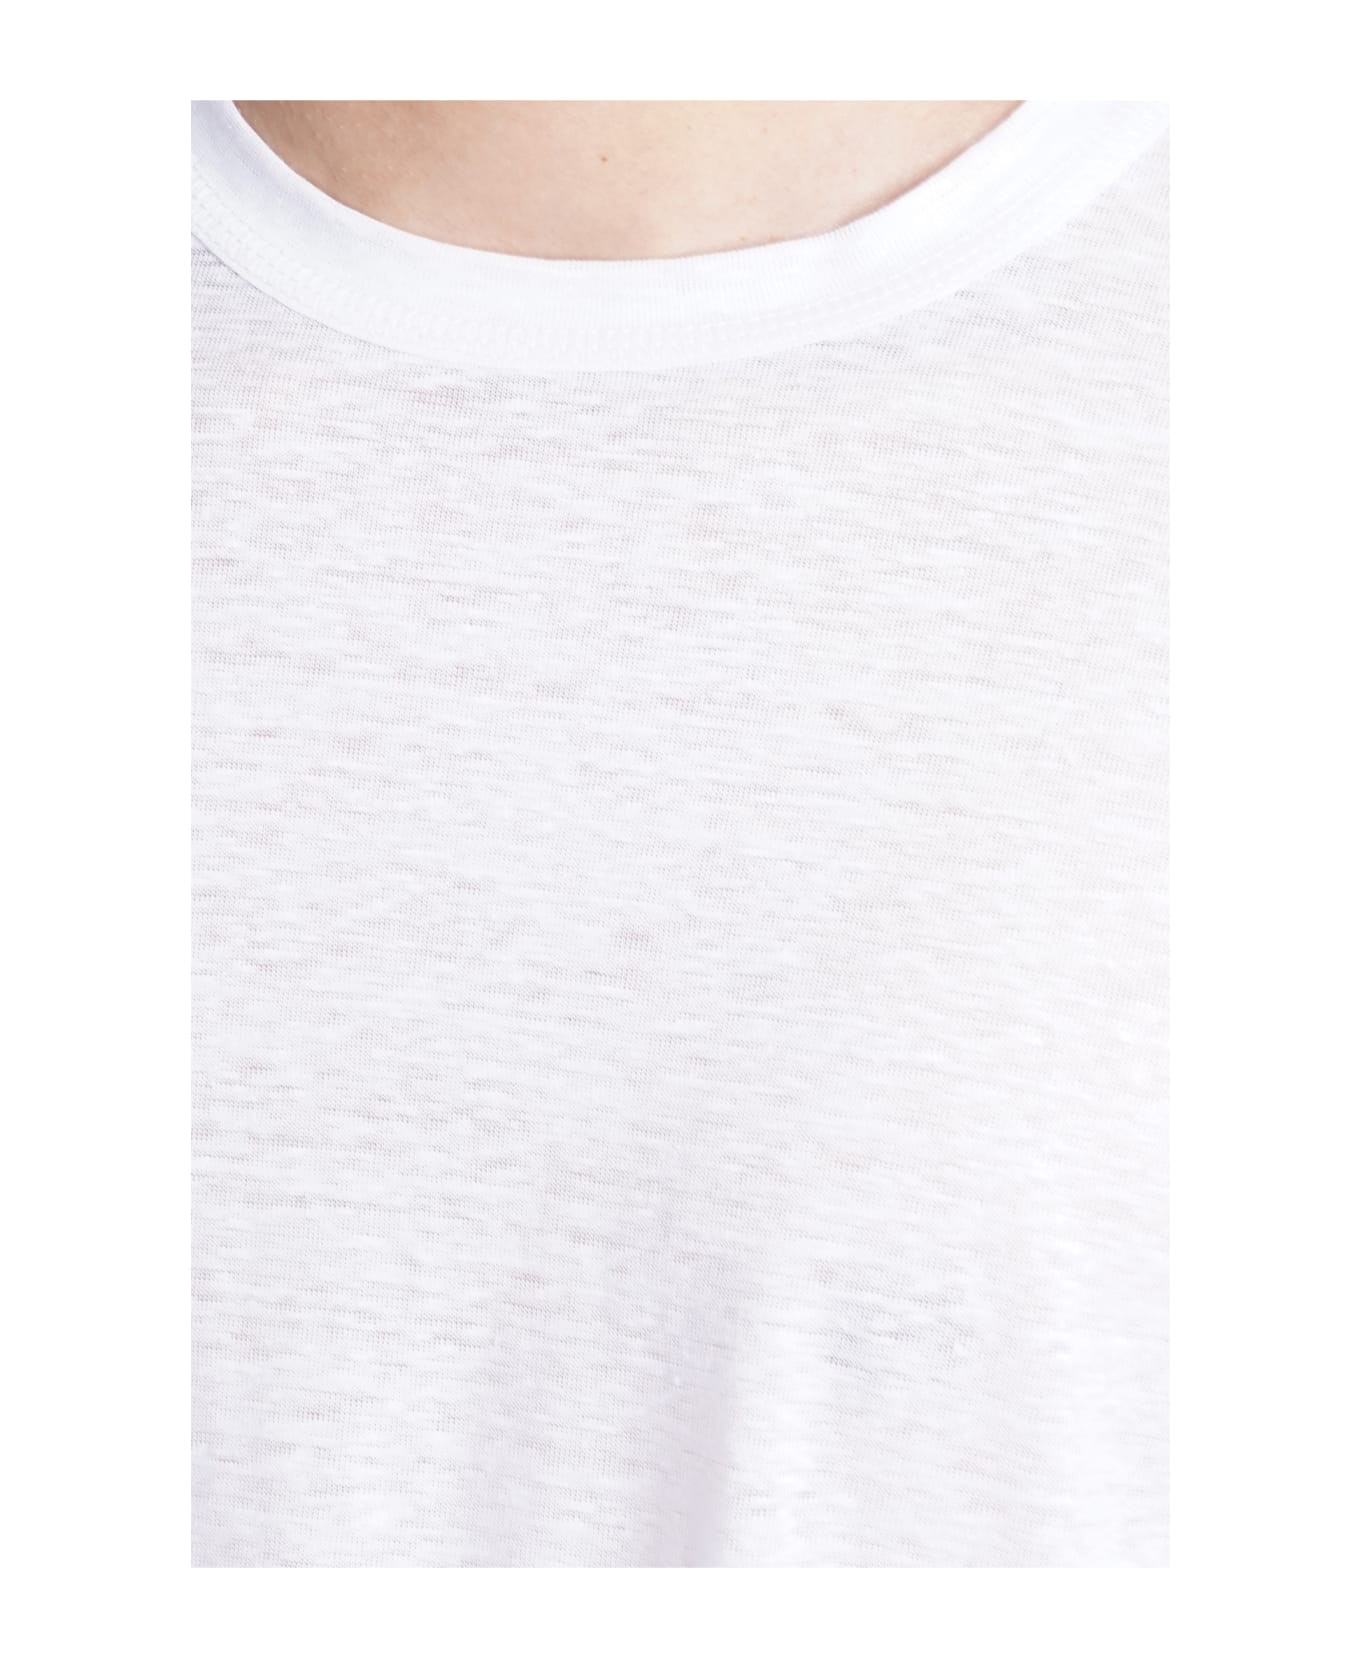 costumein T-shirt In White Linen シャツ